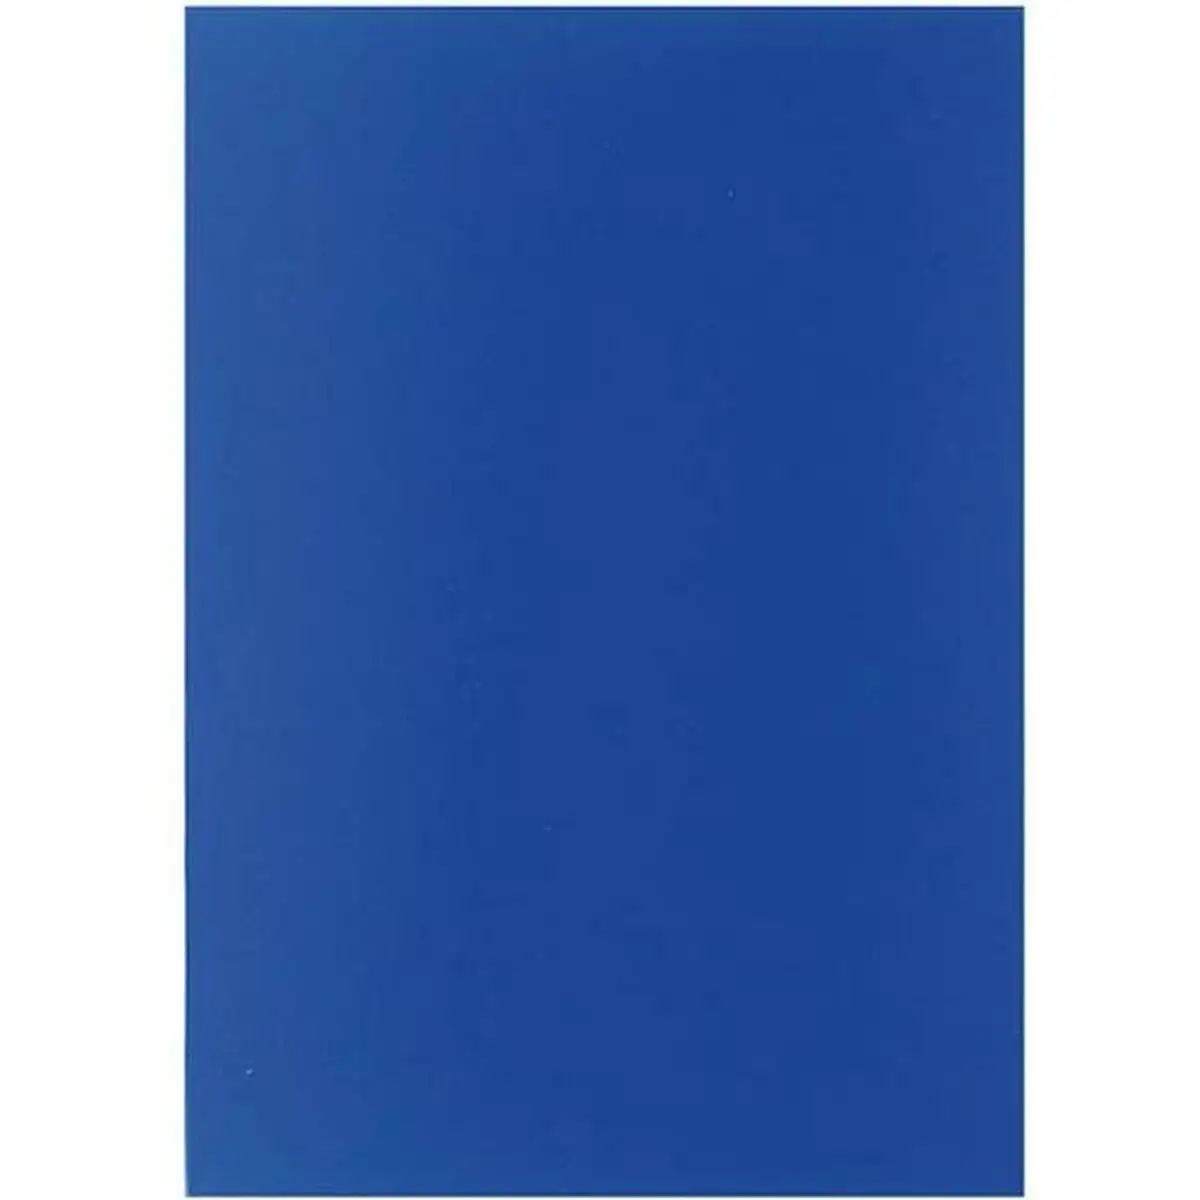 Couvertures de reliure displast blue a4 polypropyle ne 50 unite s_3240. Découvrez DIAYTAR SENEGAL - Là où le Choix Rencontre la Qualité. Parcourez notre gamme diversifiée et choisissez parmi des produits conçus pour exceller dans tous les aspects de votre vie.